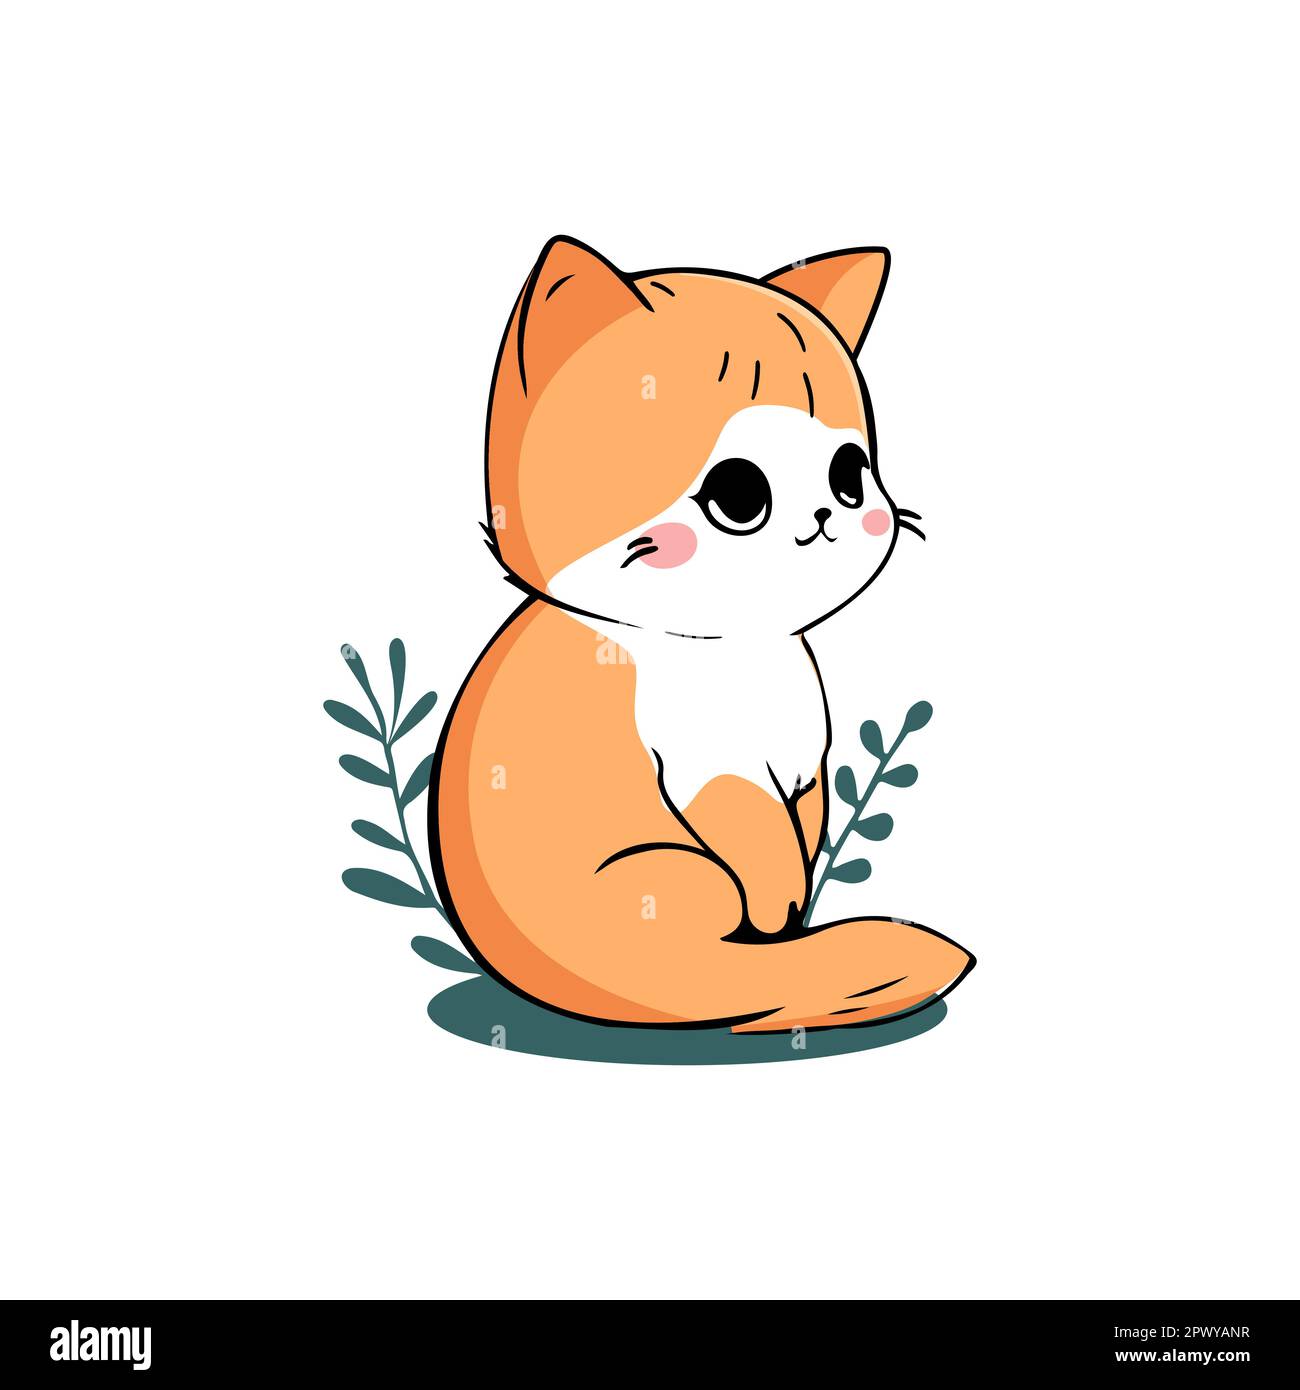 Lindo gato kawaii